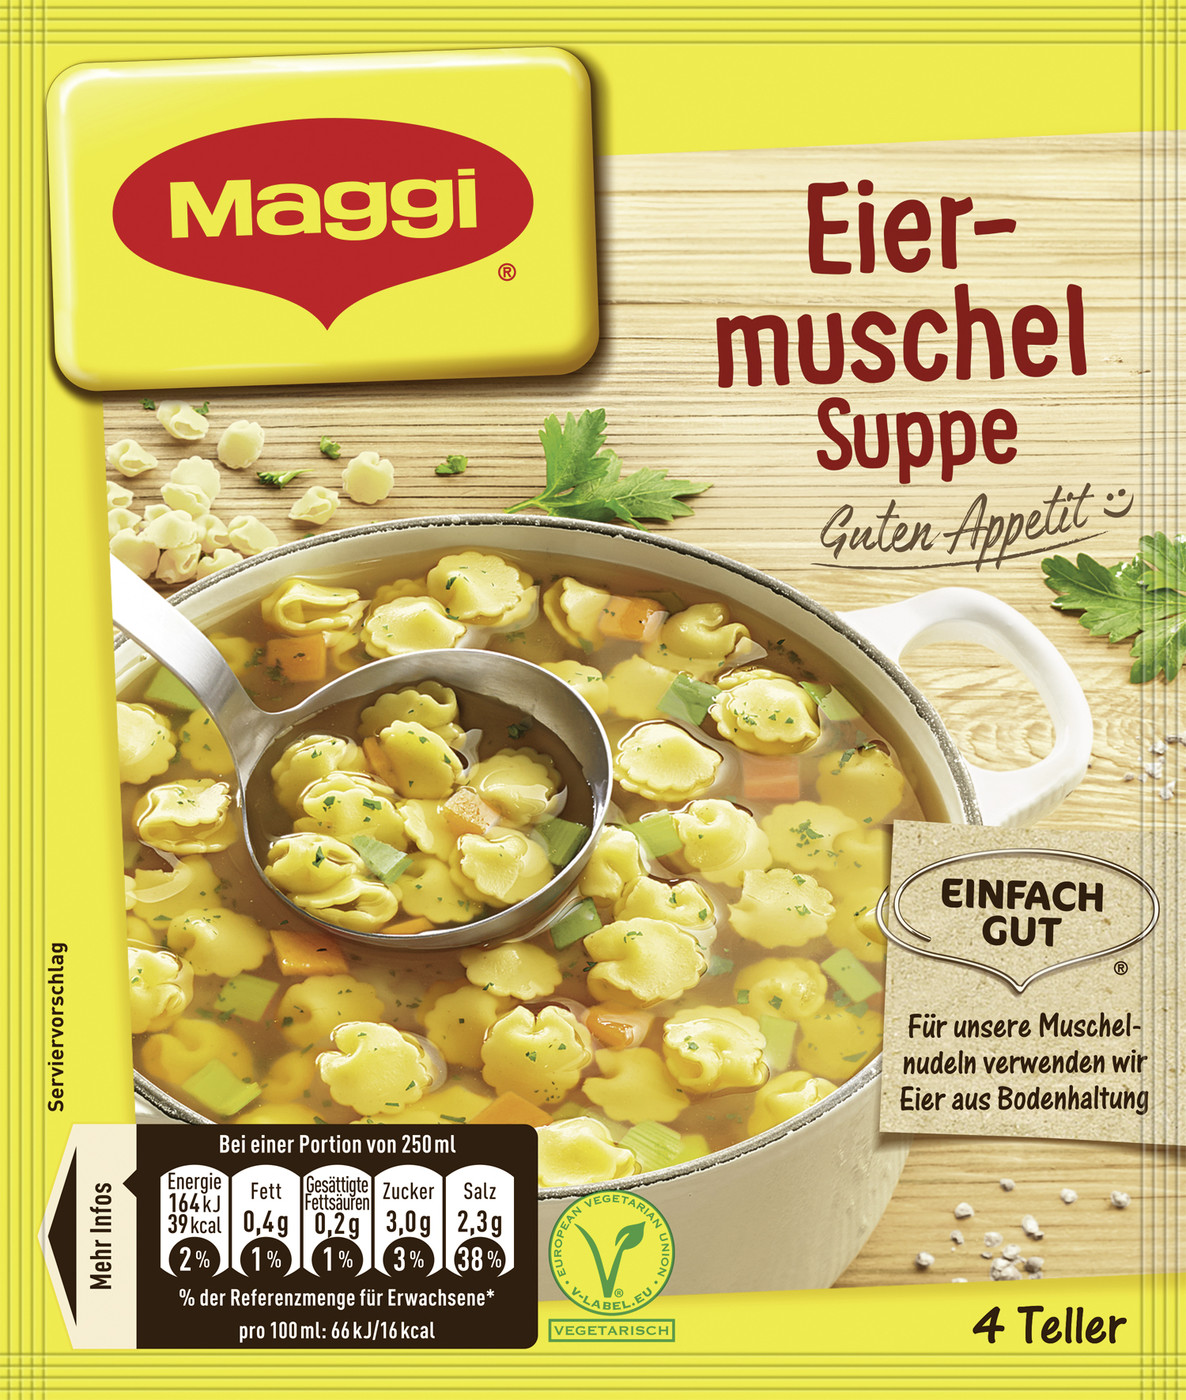 Maggi Guten Appetit! Eiermuschel-Suppe ergibt 1L